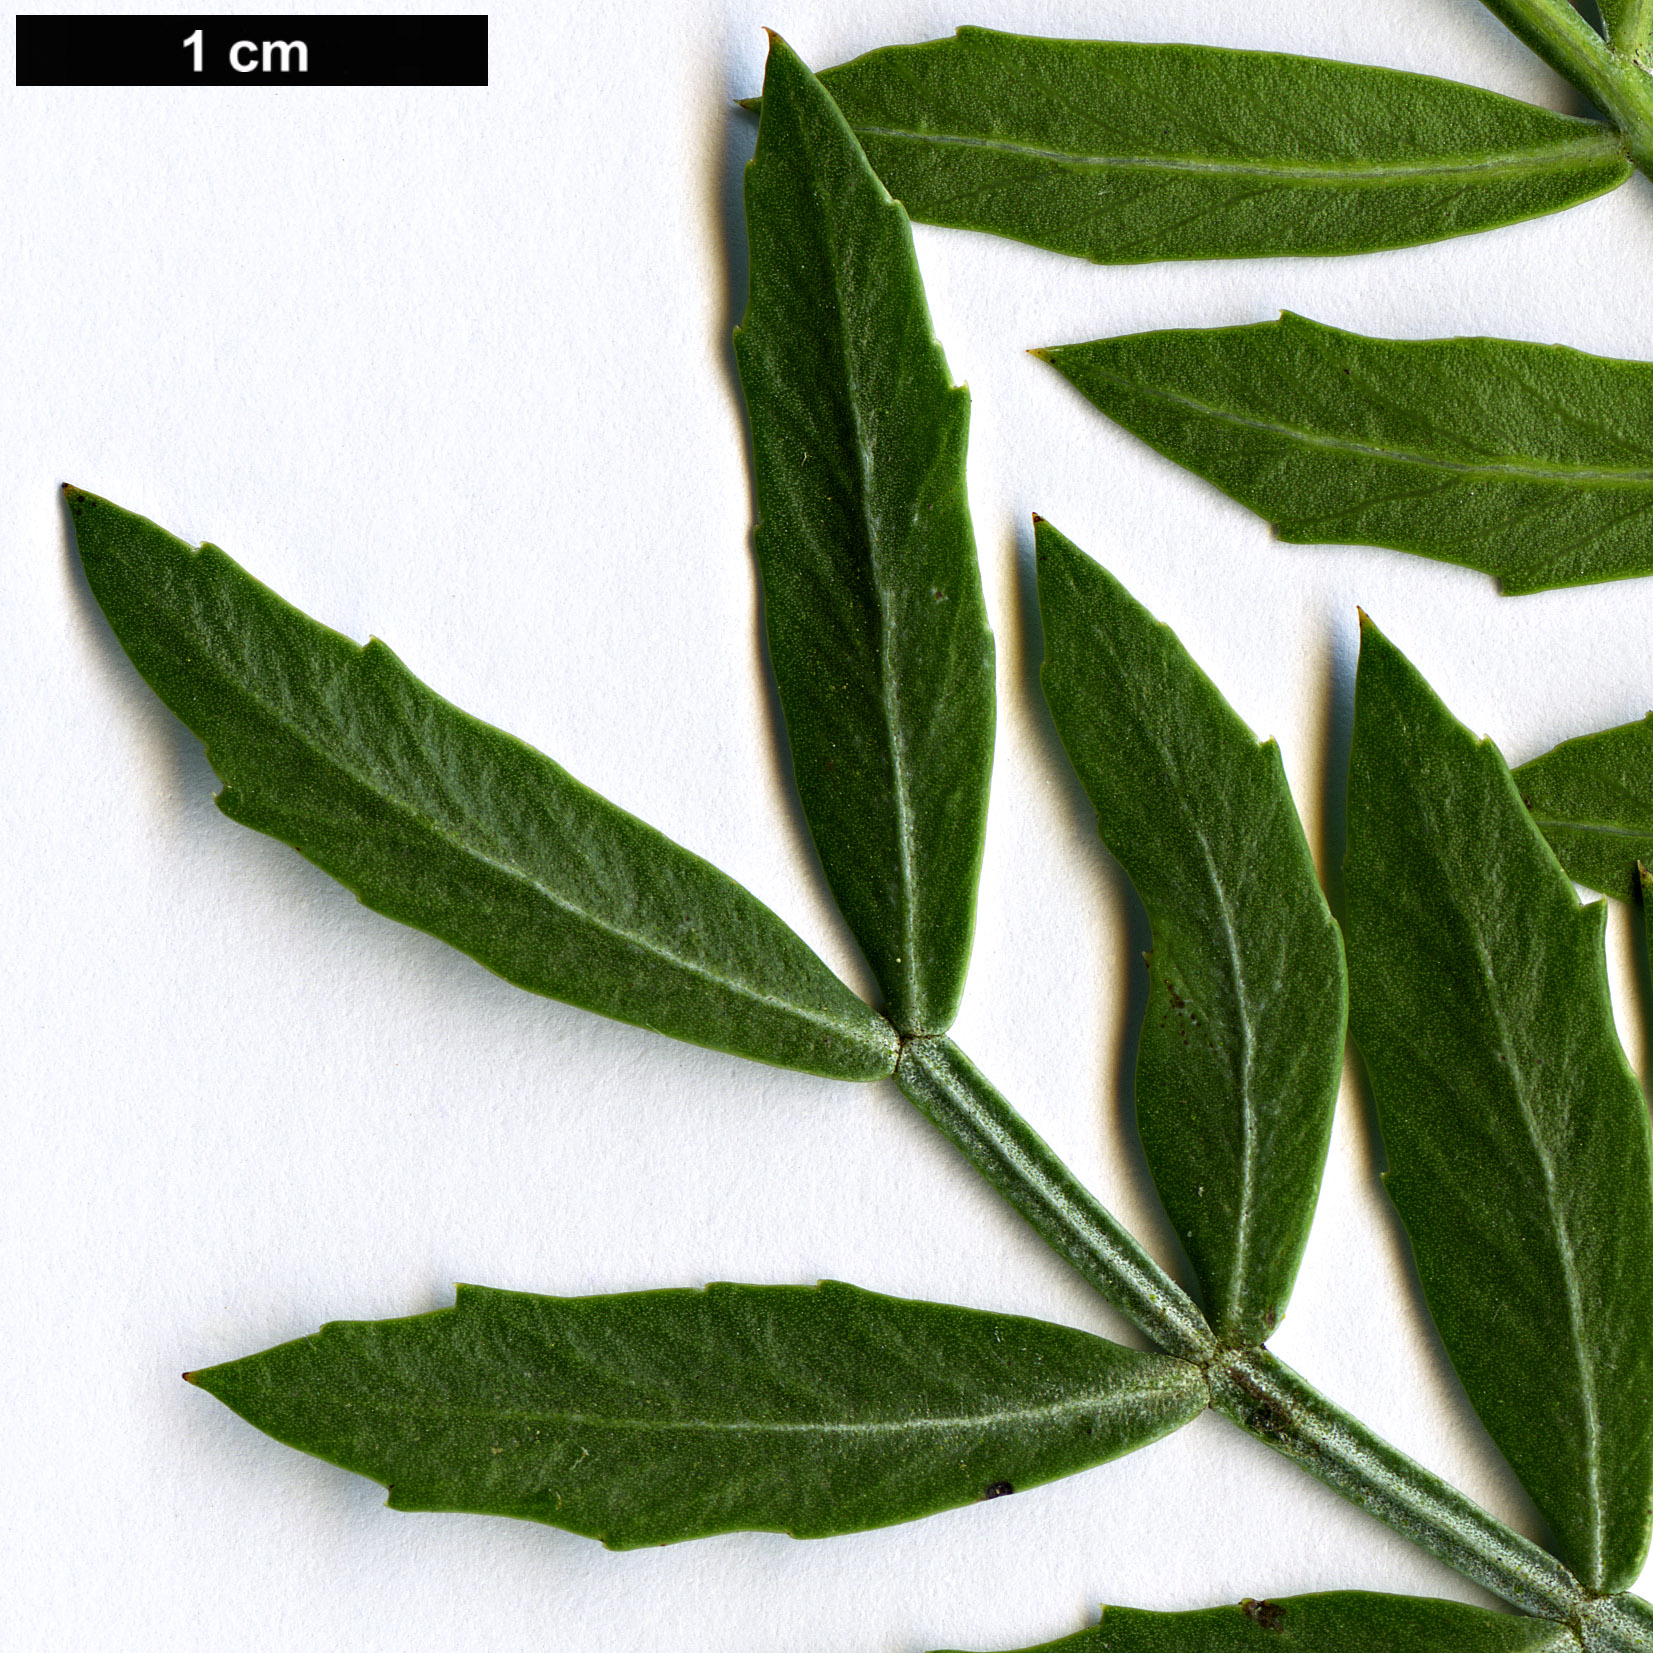 High resolution image: Family: Anacardiaceae - Genus: Schinus - Taxon: lentiscifolius